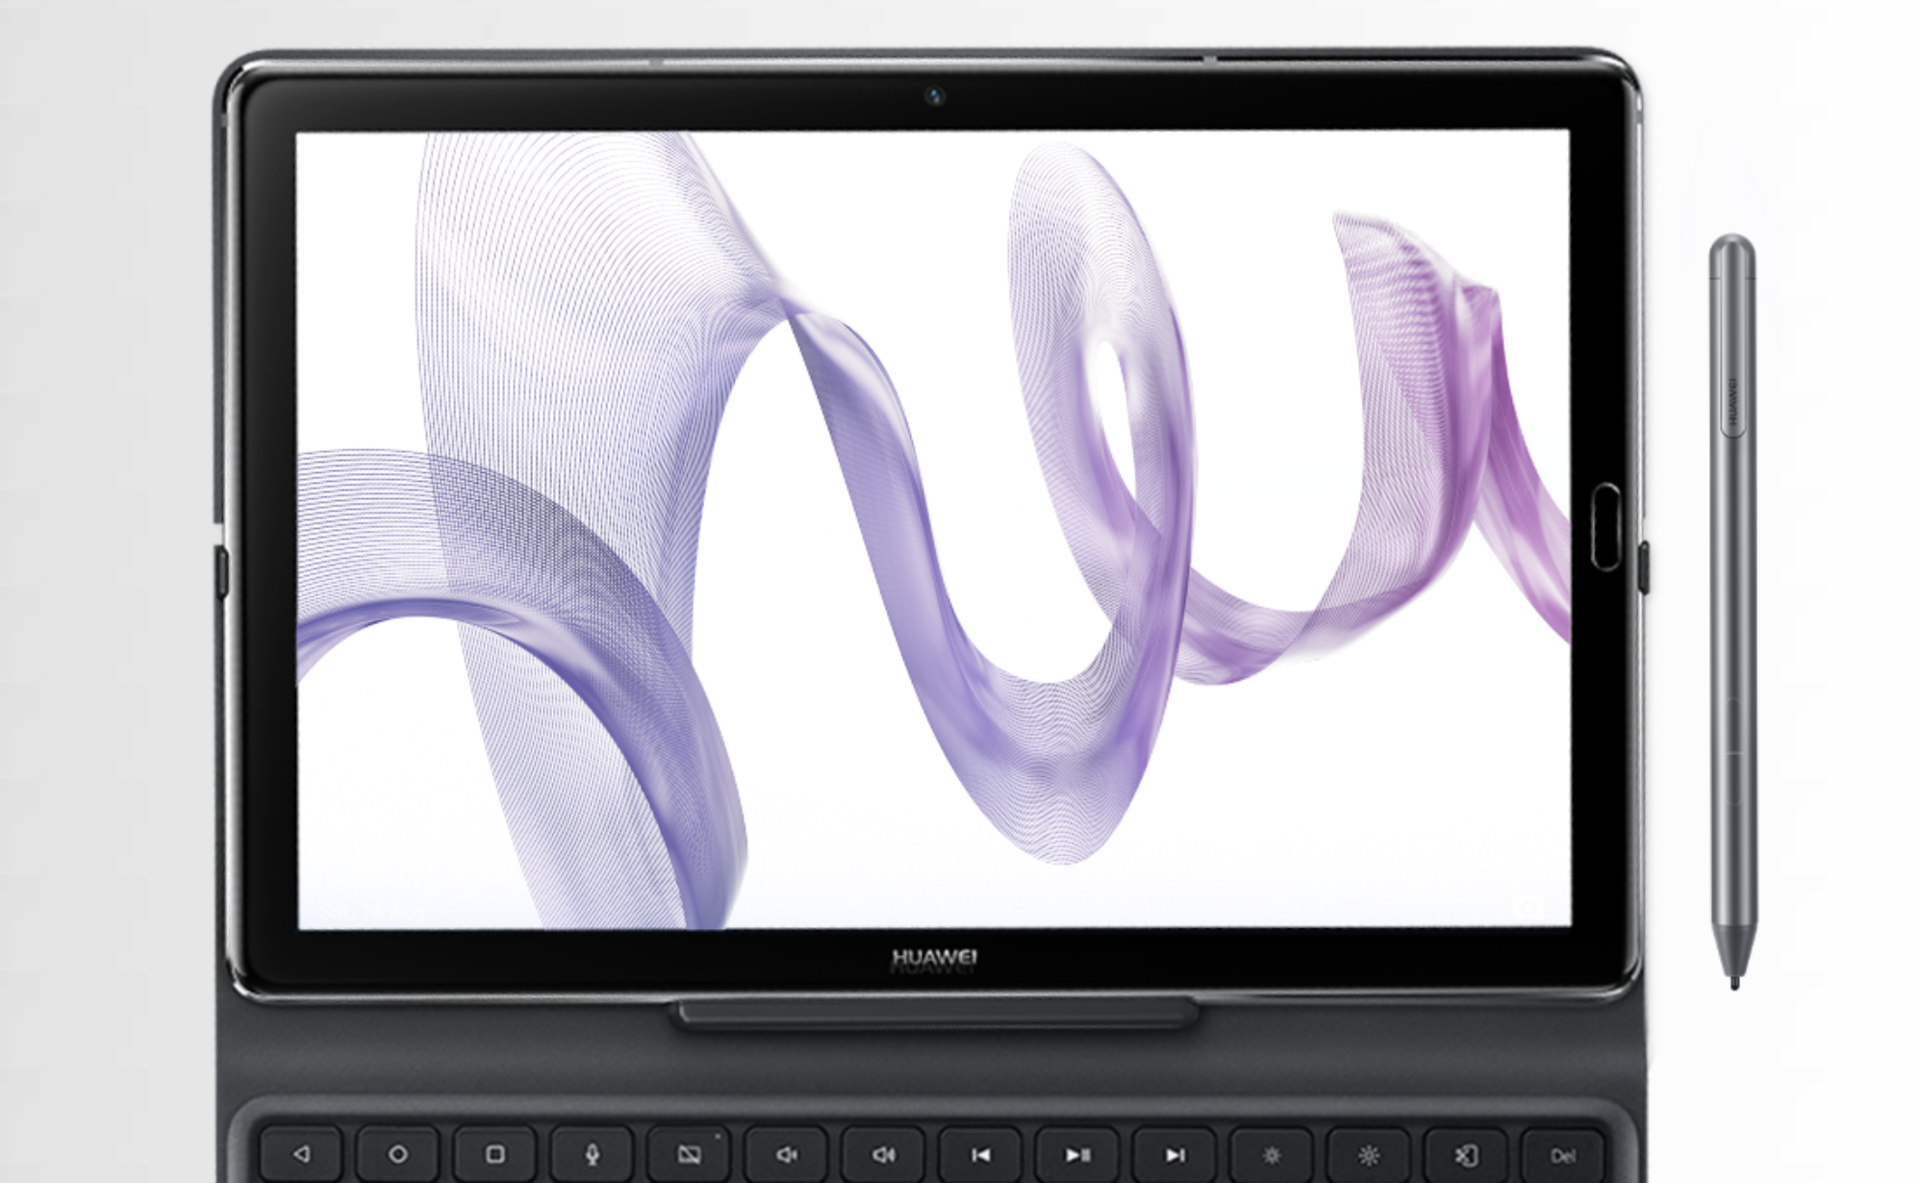 华为公司或将发布新的MediaPad 配置10.7英寸显示器